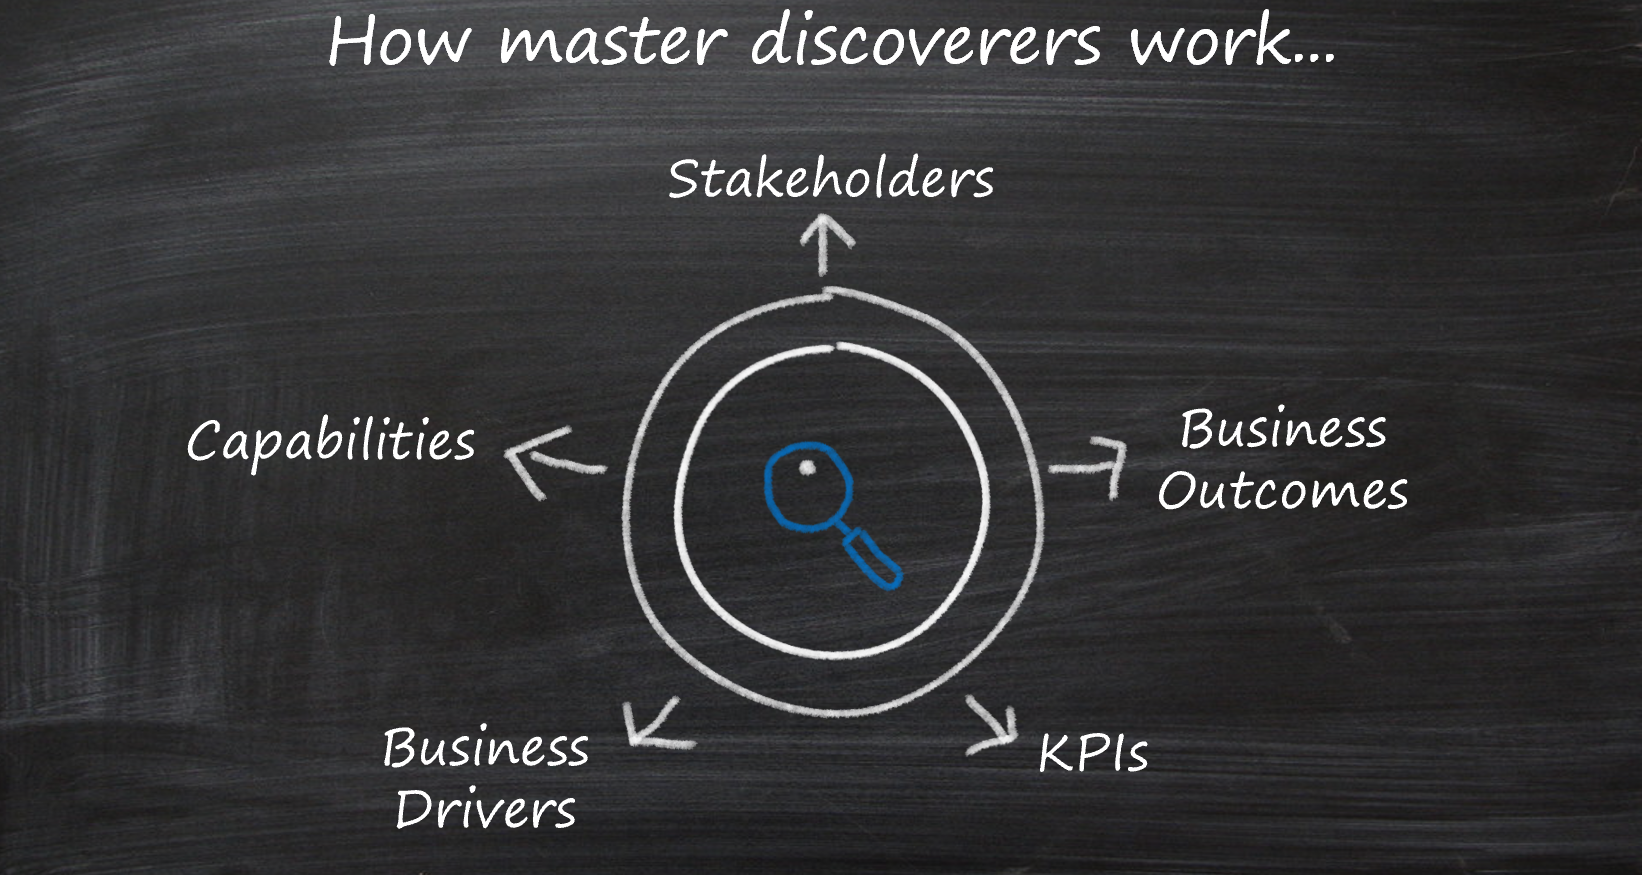 Cinq domaines principaux de découverte : parties prenantes, résultats, pilotes, KPI et fonctionnalités